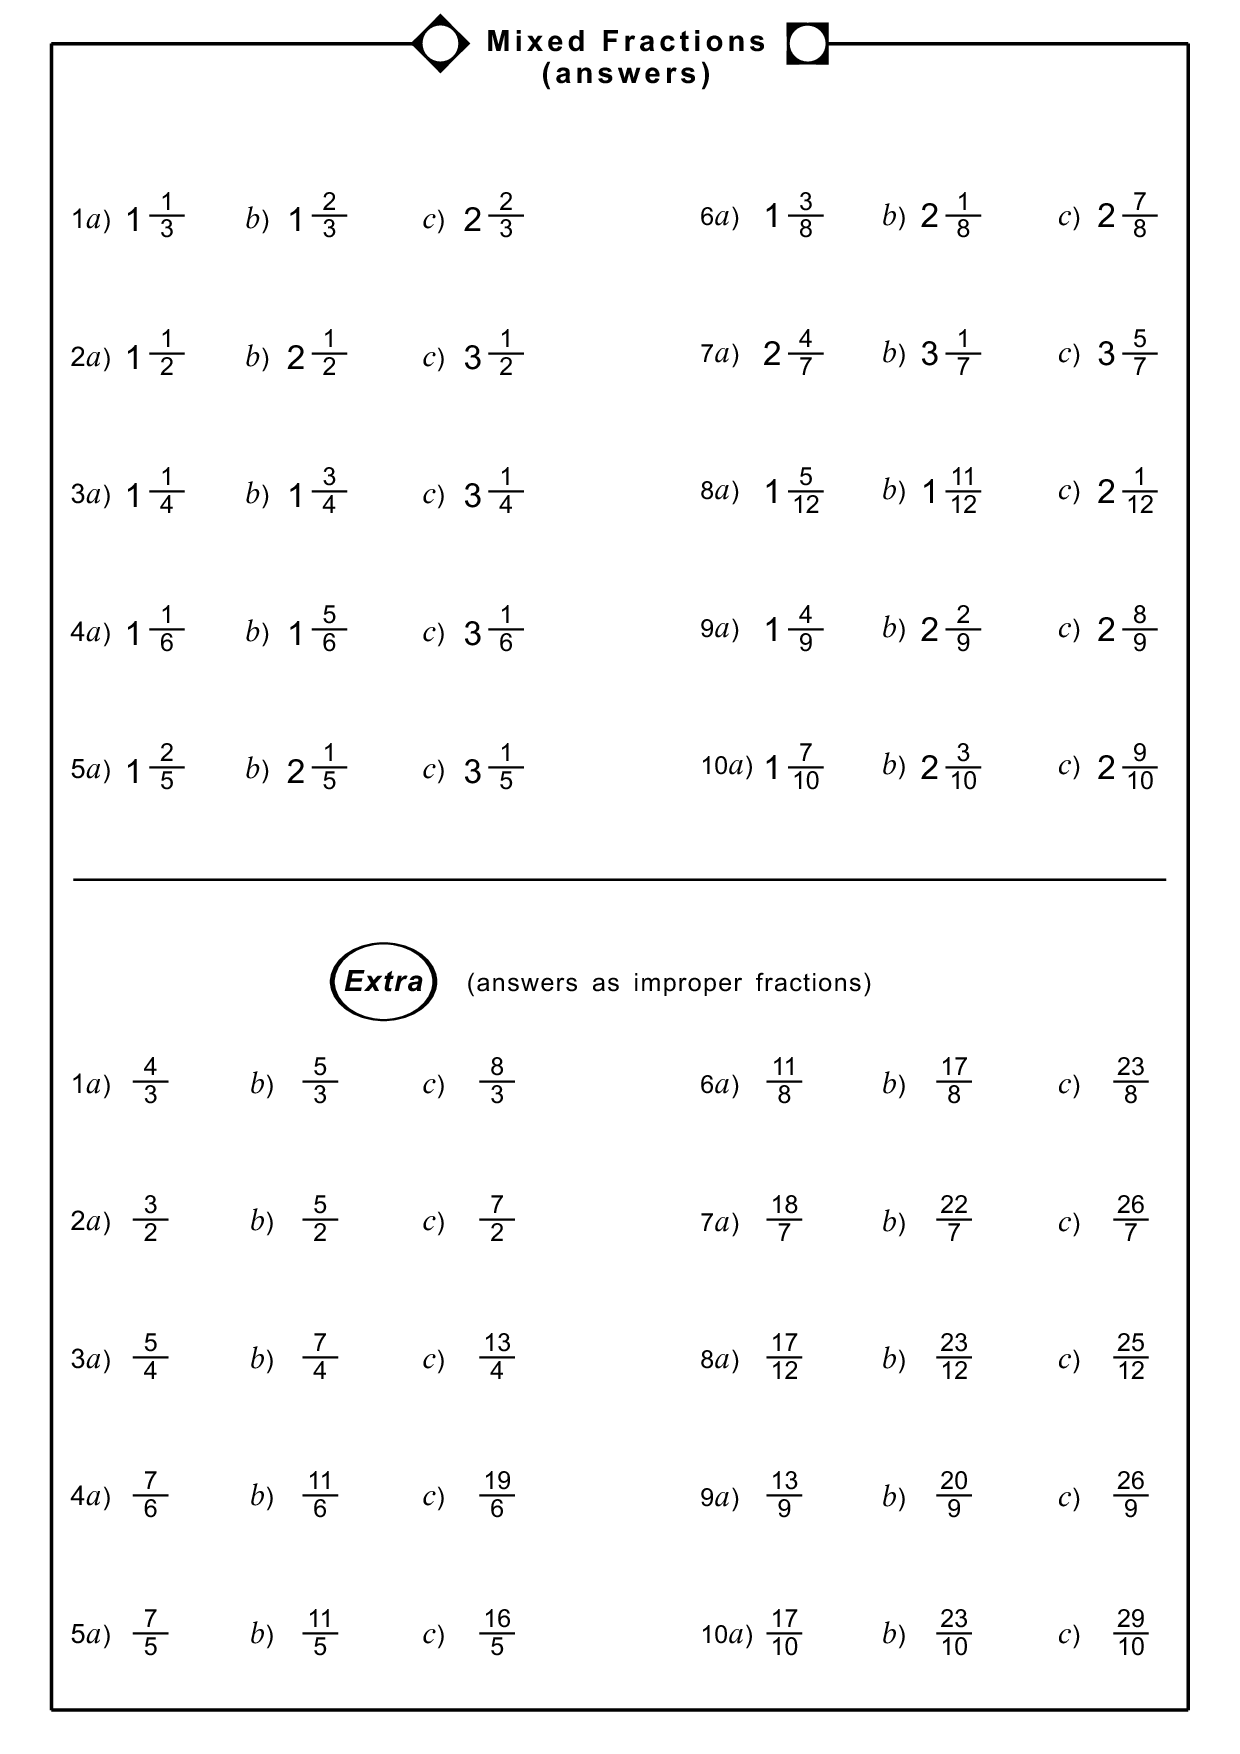 improper-fraction-and-mixed-number-worksheet